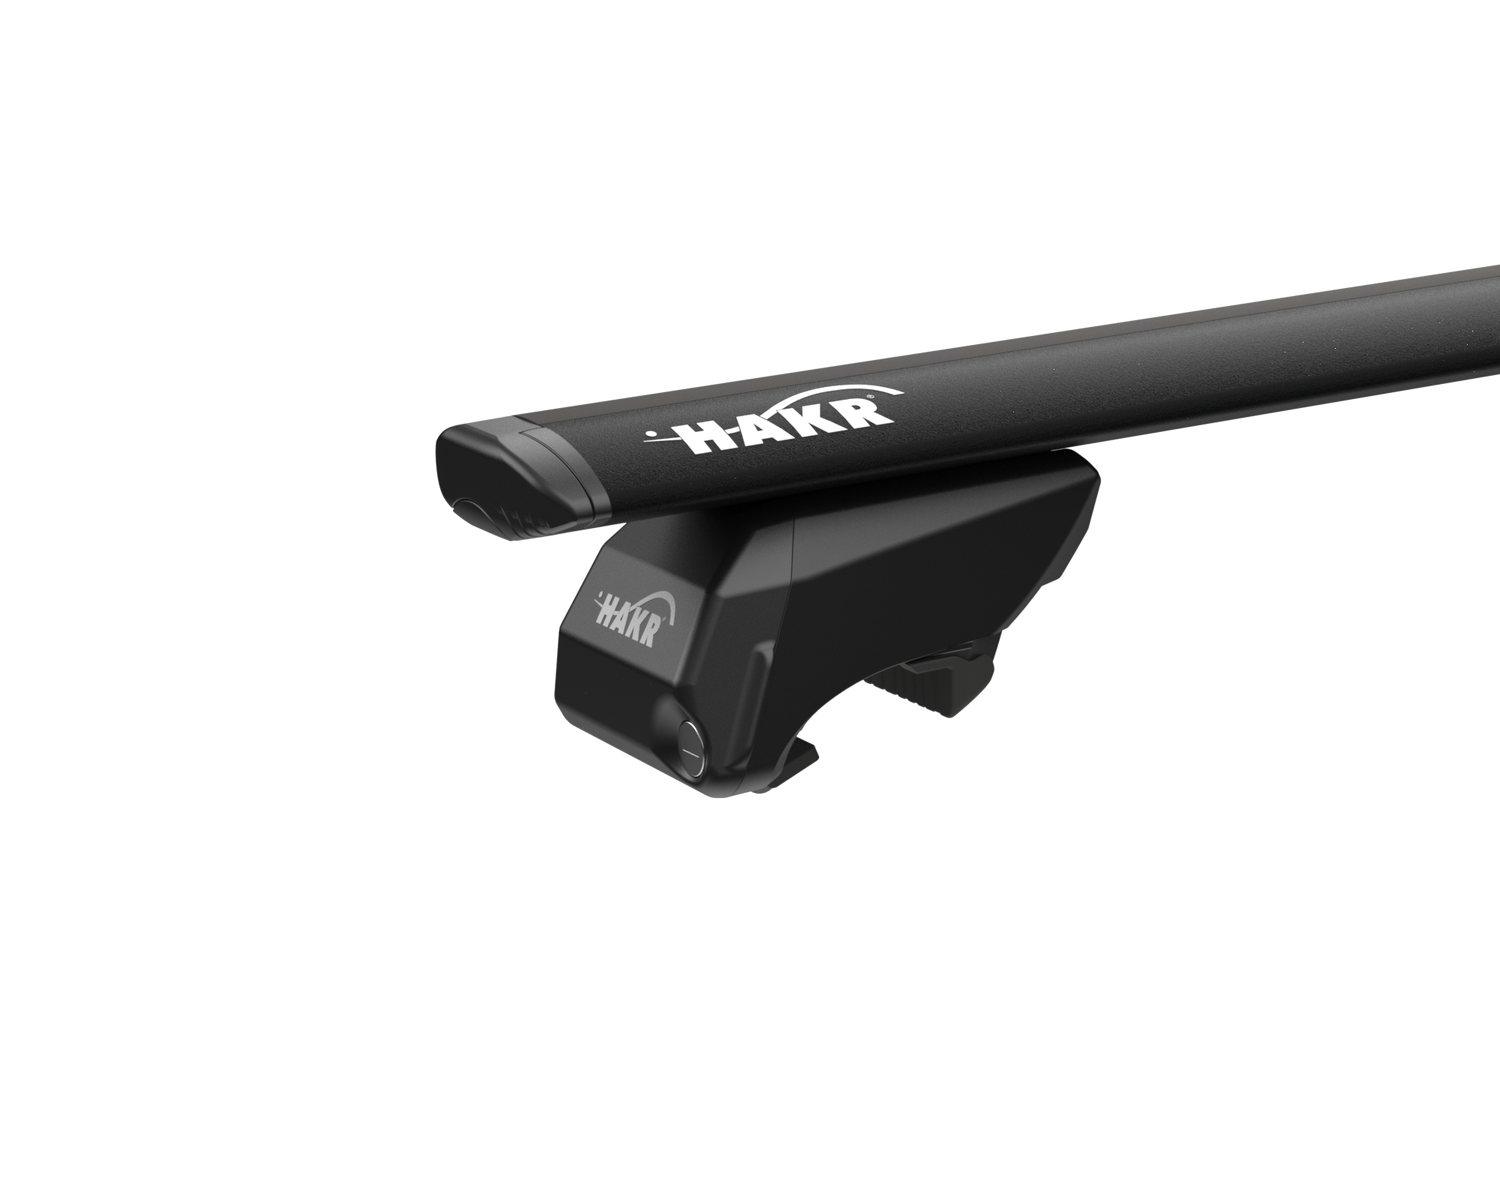 Příčníky Hakr Ford Mondeo (MK5) s integrovanými podélníky,Alu tyče wing profile black, 2015-